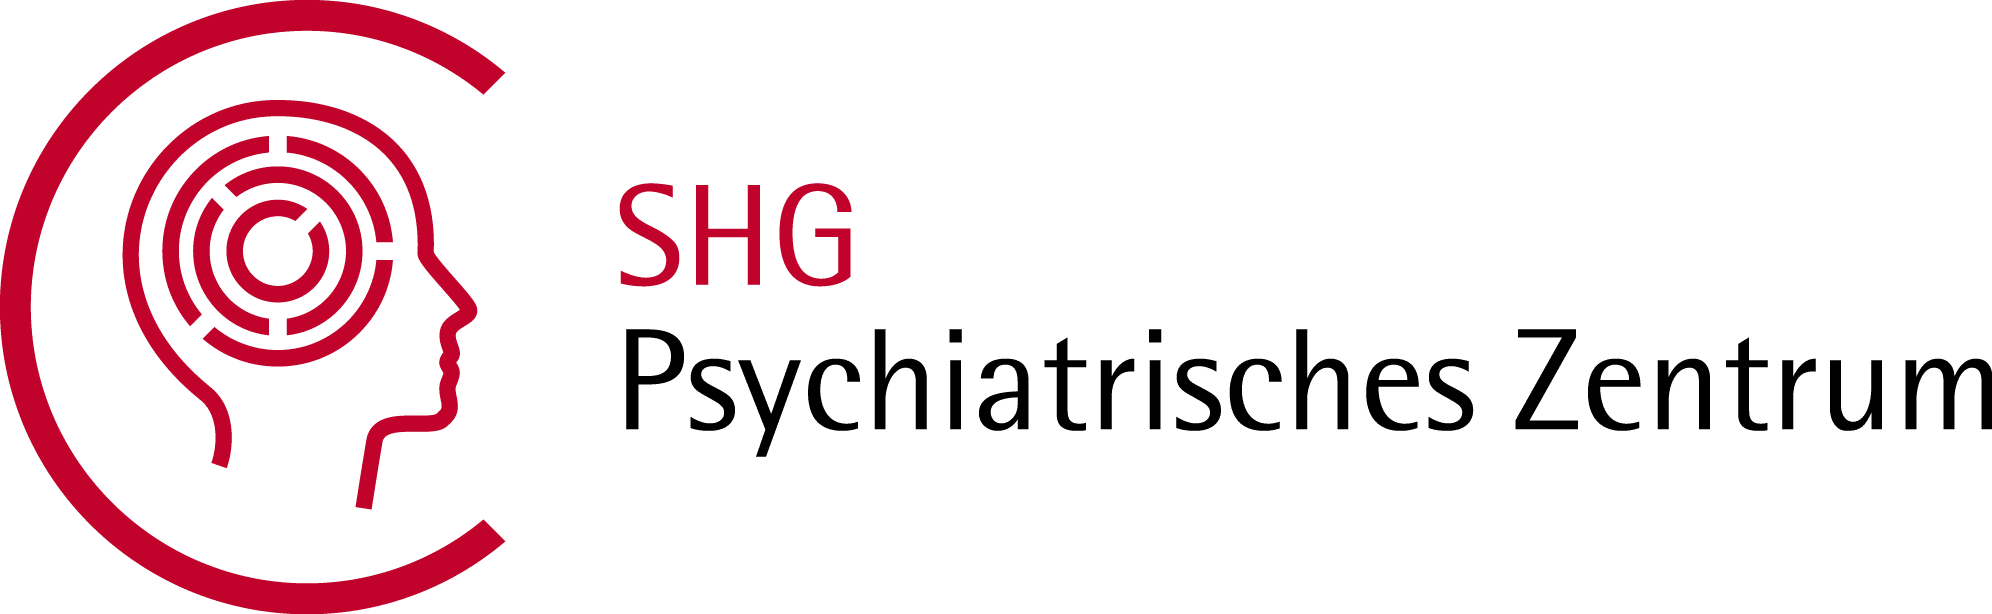 SHG Psychiatrisches Zentrum Klinik und Tagesklinik